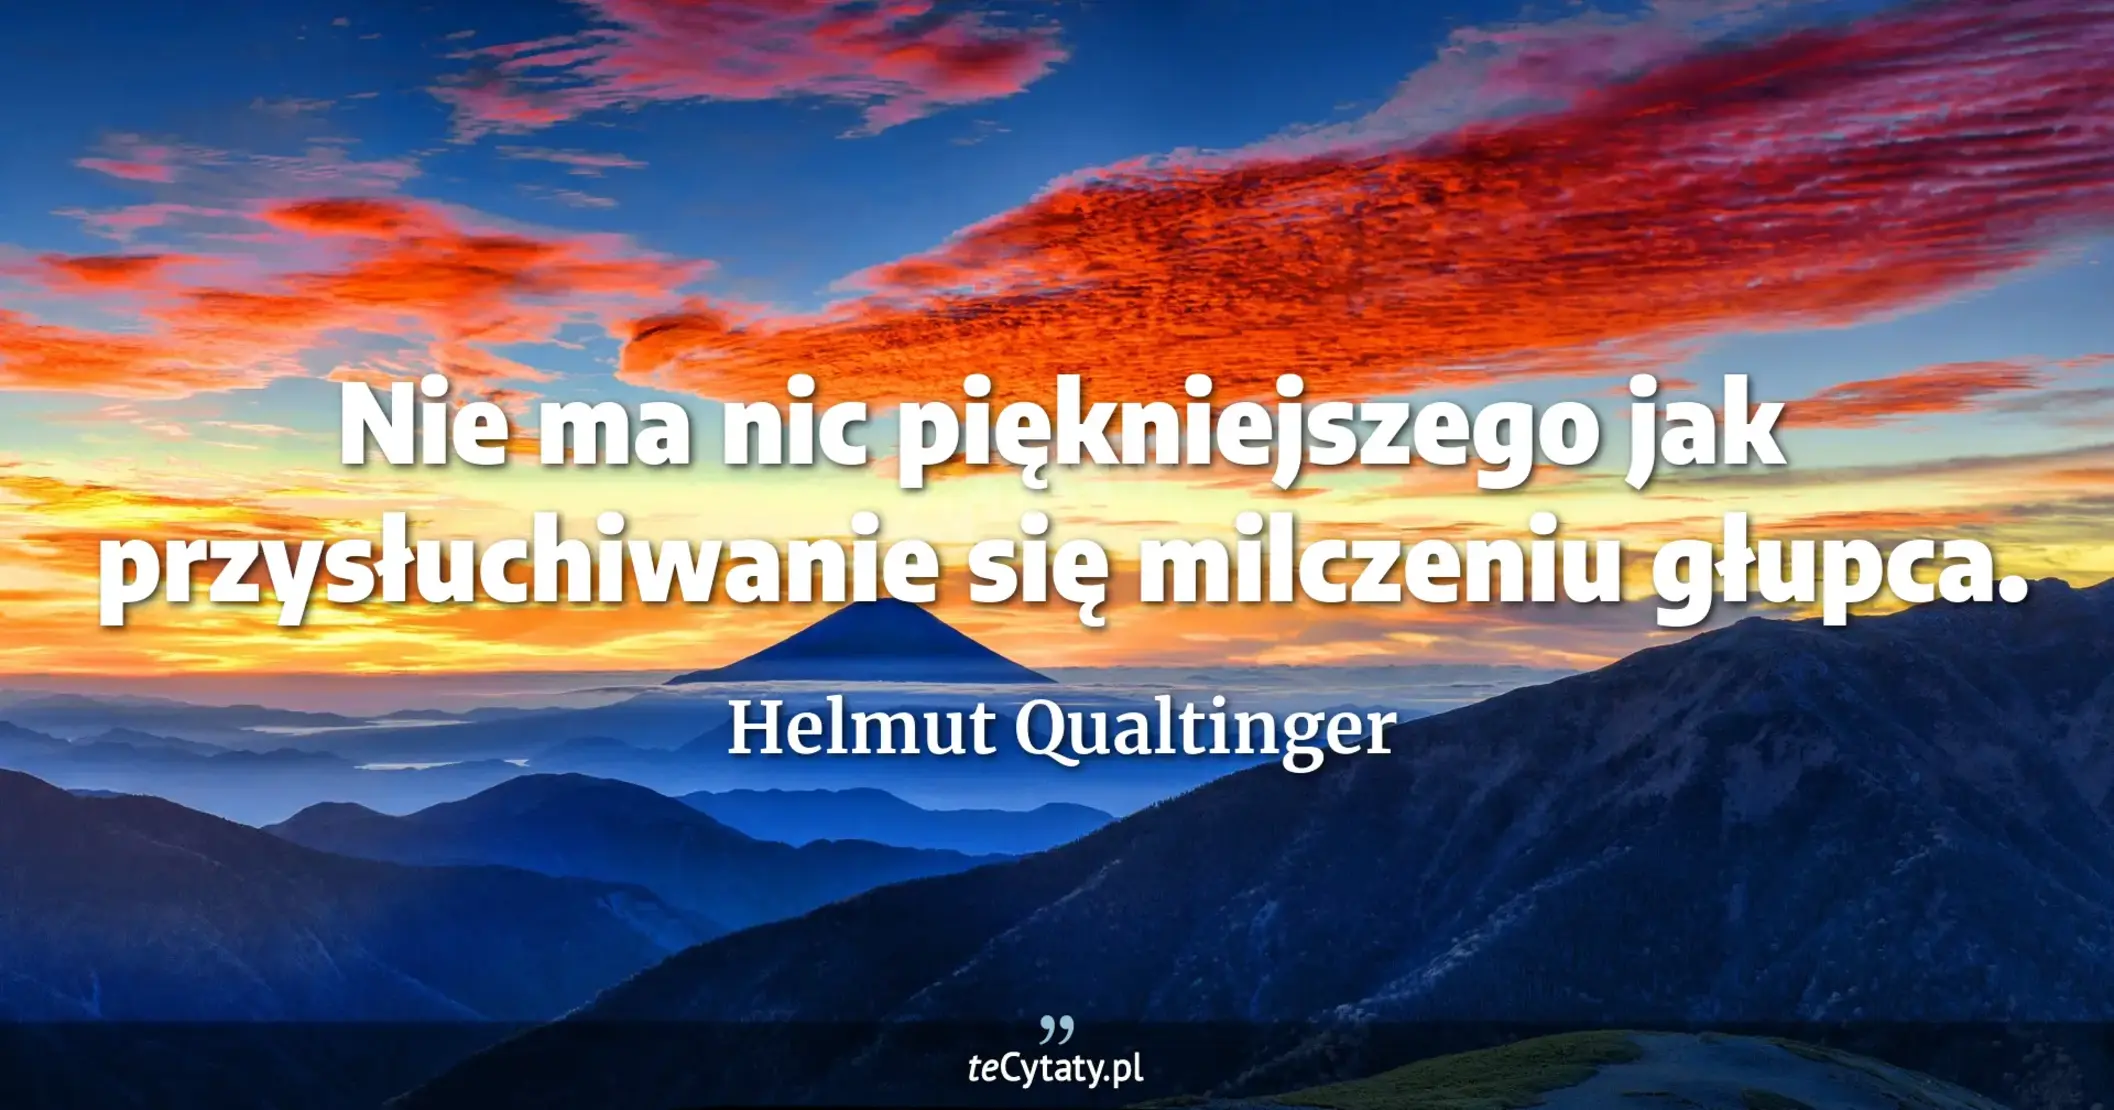 Nie ma nic piękniejszego jak przysłuchiwanie się milczeniu głupca. - Helmut Qualtinger